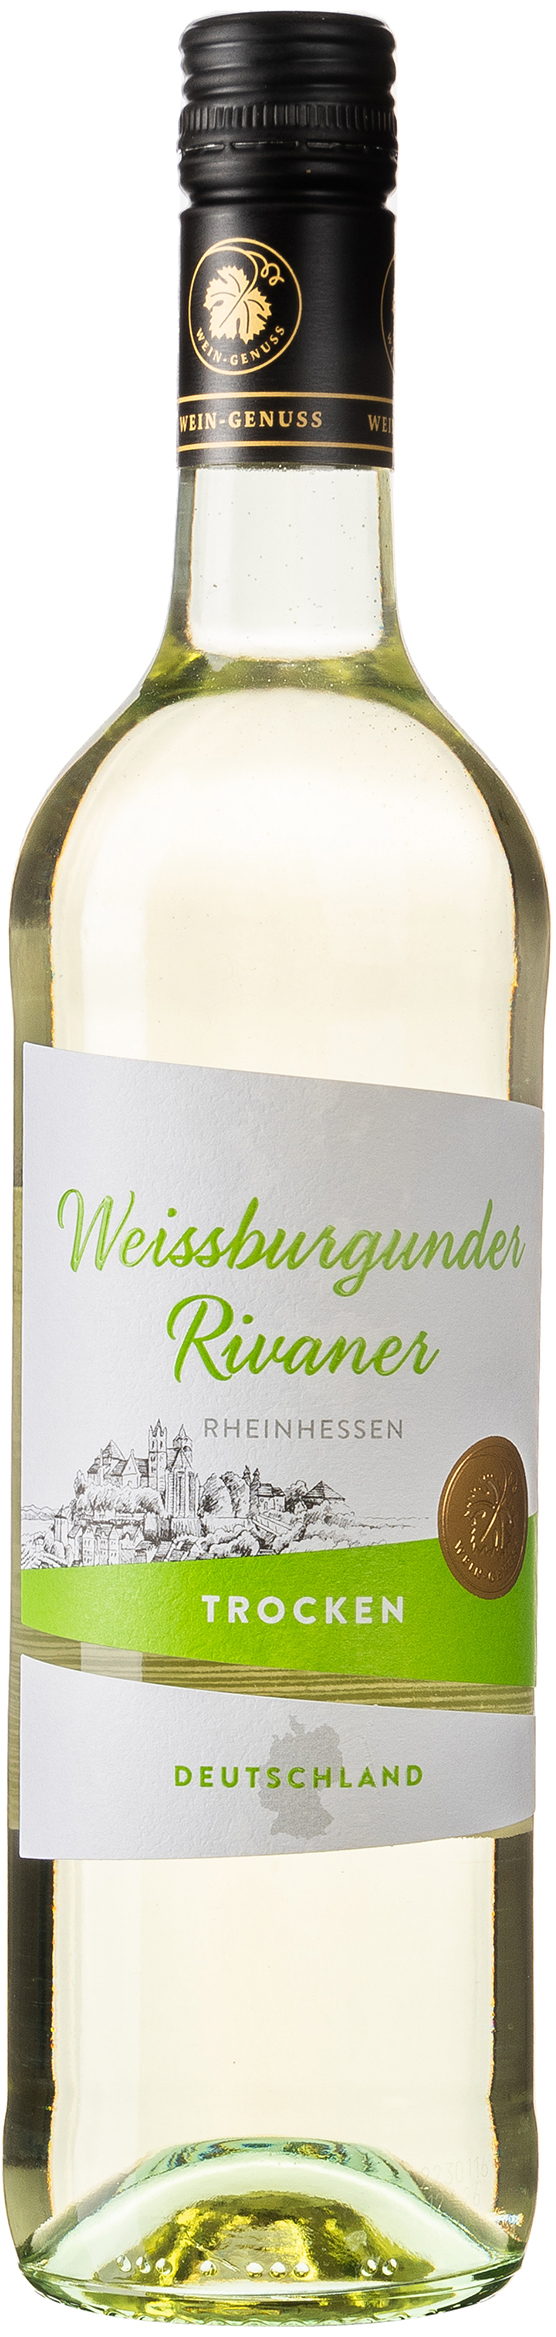 Wein-Genuss Weissburgunder Rivaner Rheinhessen trocken 12%vol. 0,75L